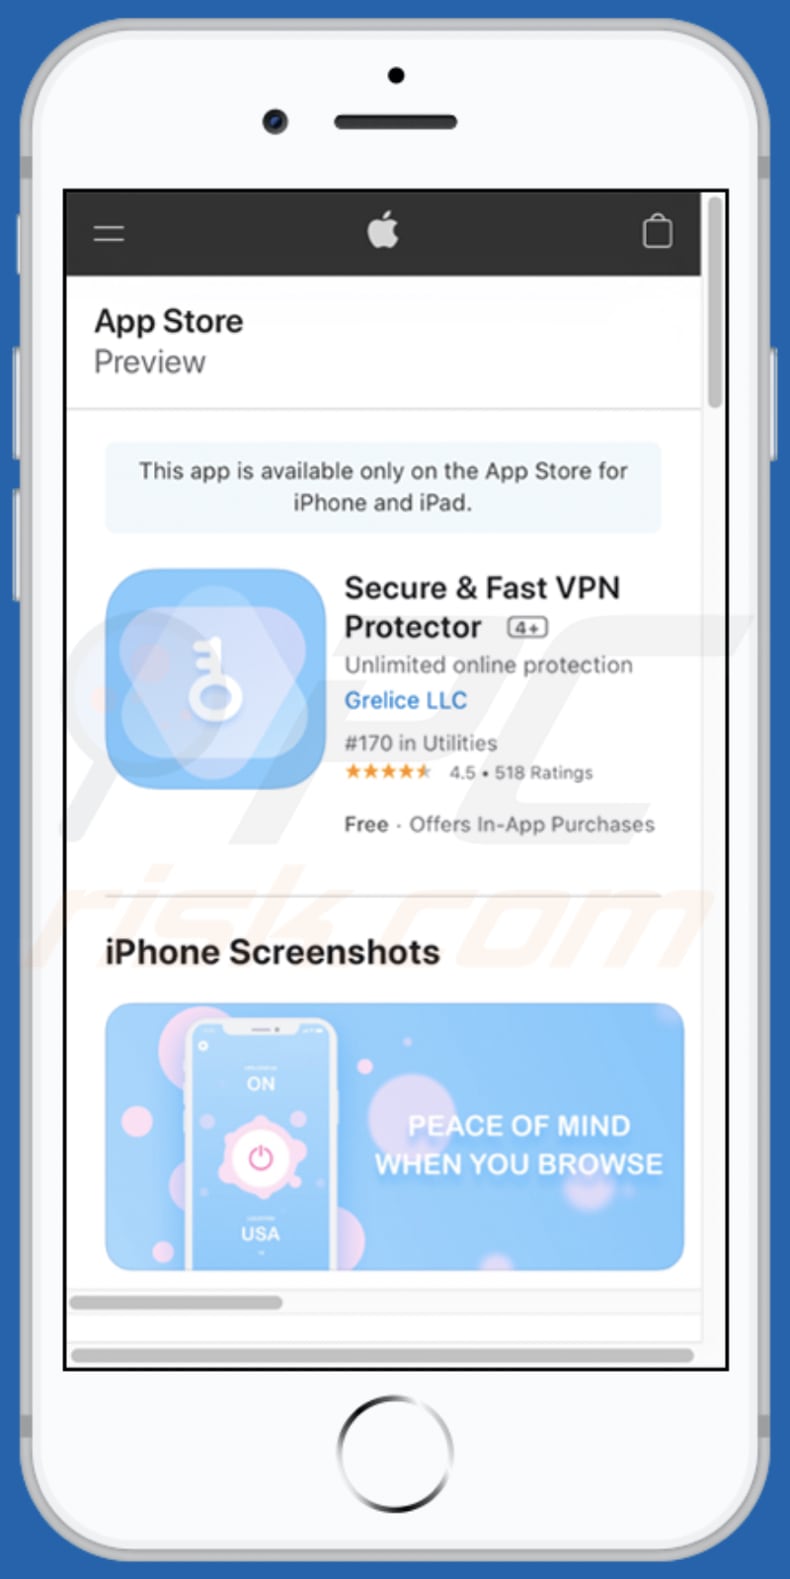 reander.net pop-up scam app promoted via main variant